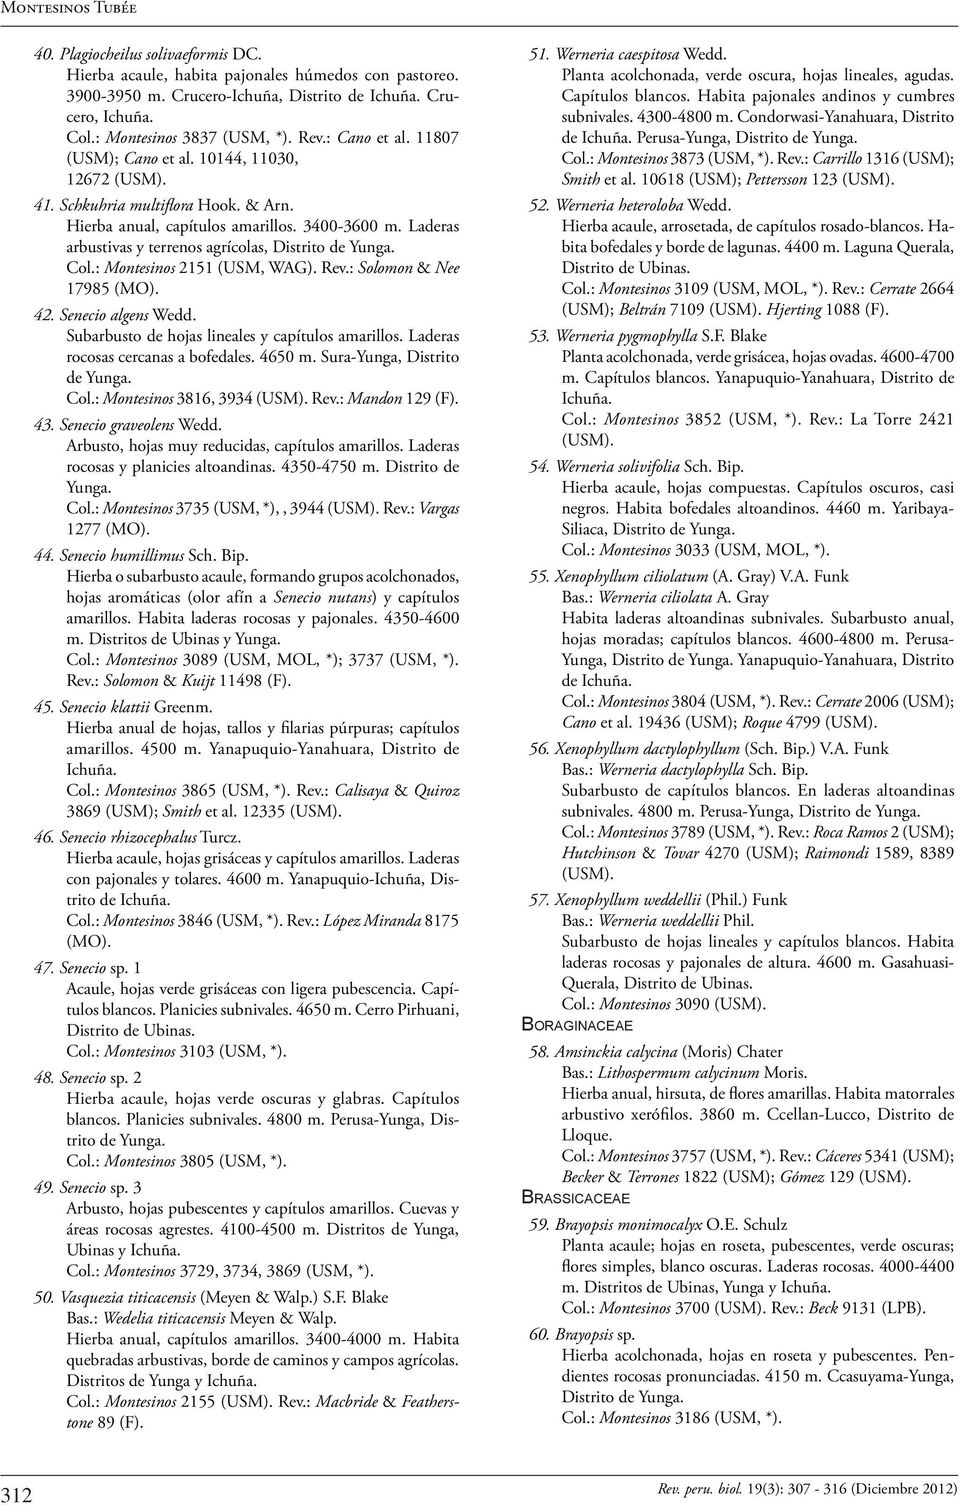 Laderas arbustivas y terrenos agrícolas, Col.: Montesinos 2151 (USM, WAG). Rev.: Solomon & Nee 17985 (MO). 42. Senecio algens Wedd. Subarbusto de hojas lineales y capítulos amarillos.